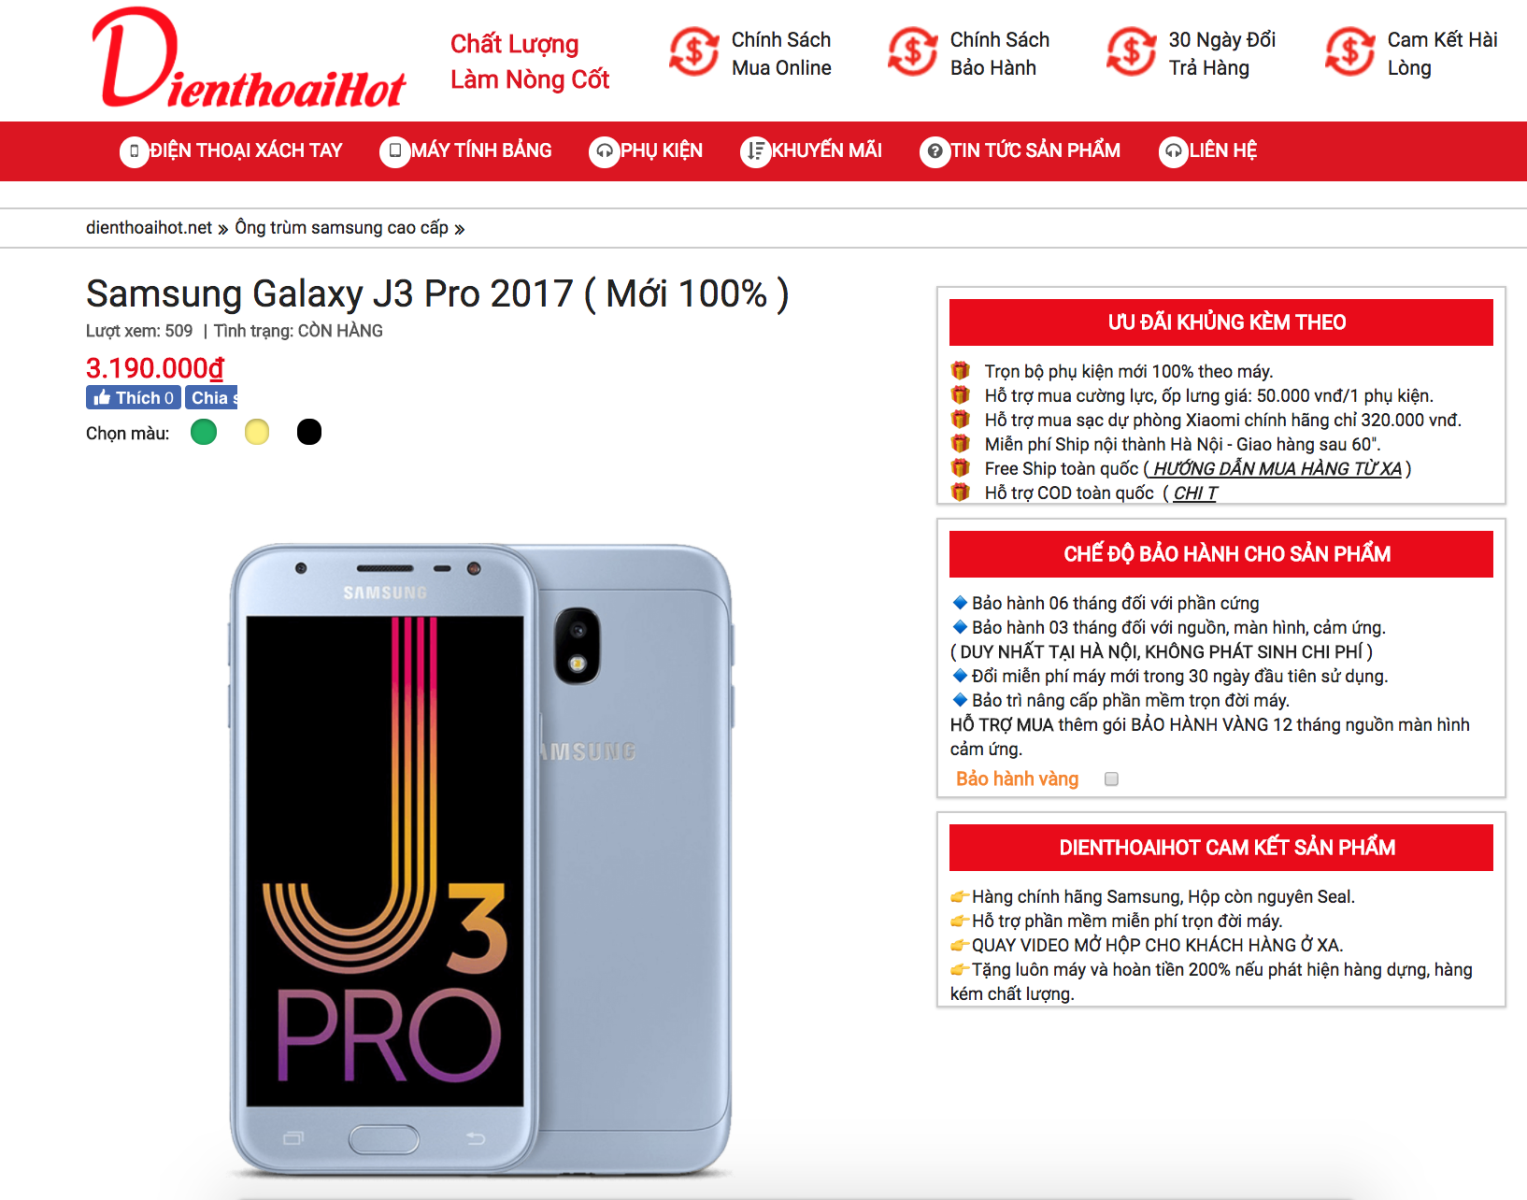 Giá bán J3 Pro 2017 tại Dienthoaihot rẻ hơn 1.300.000đ